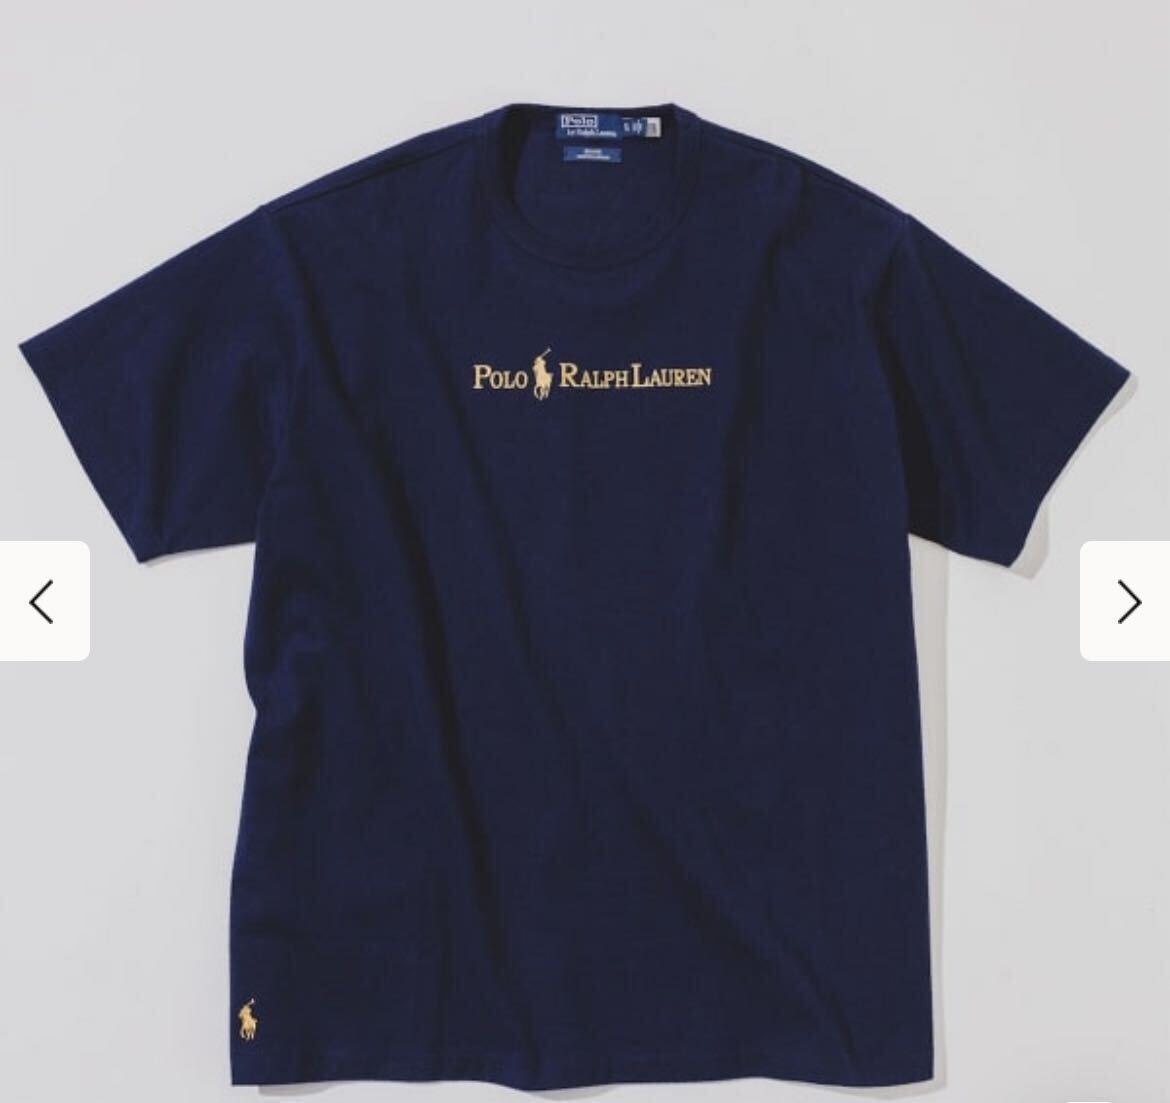 ■■■■■■■■■ Polo Ralph Lauren for BEAMS 別注 Gold Logo T-Shirt ポロ ラルフローレン ビームス別注 Tシャツ ■■■■■■■■■_画像4